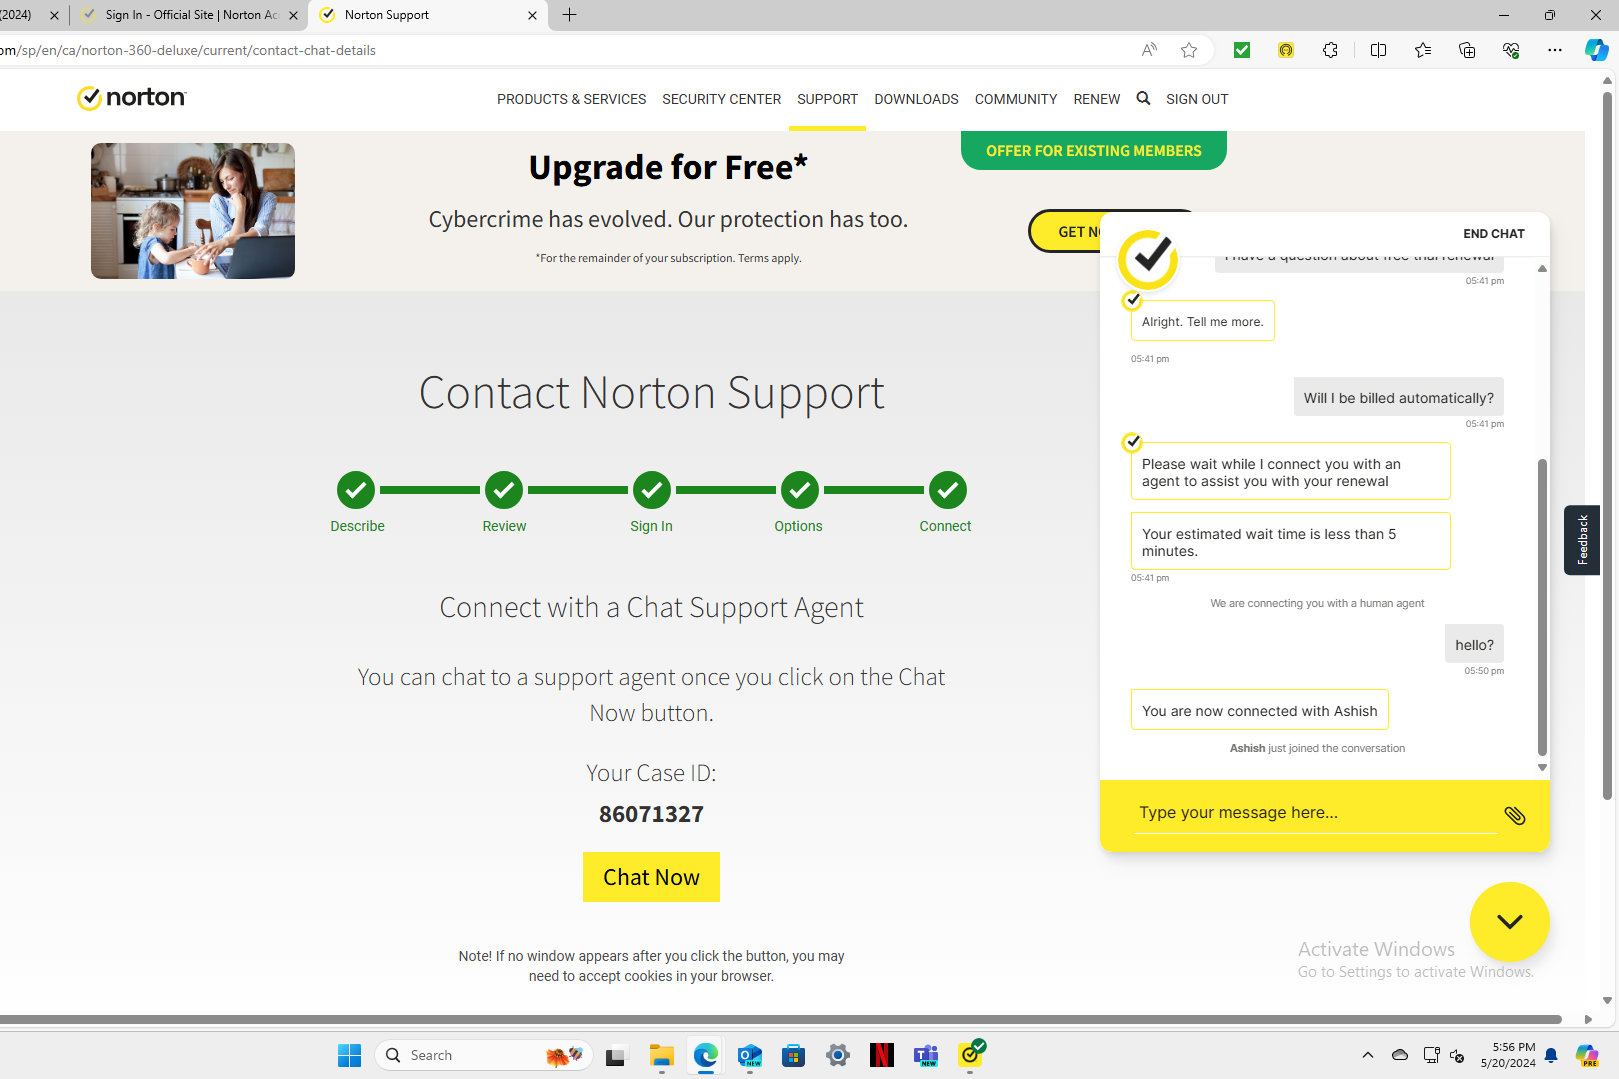 El chat en vivo de Norton tuvo un tiempo de respuesta razonable y fue útil.